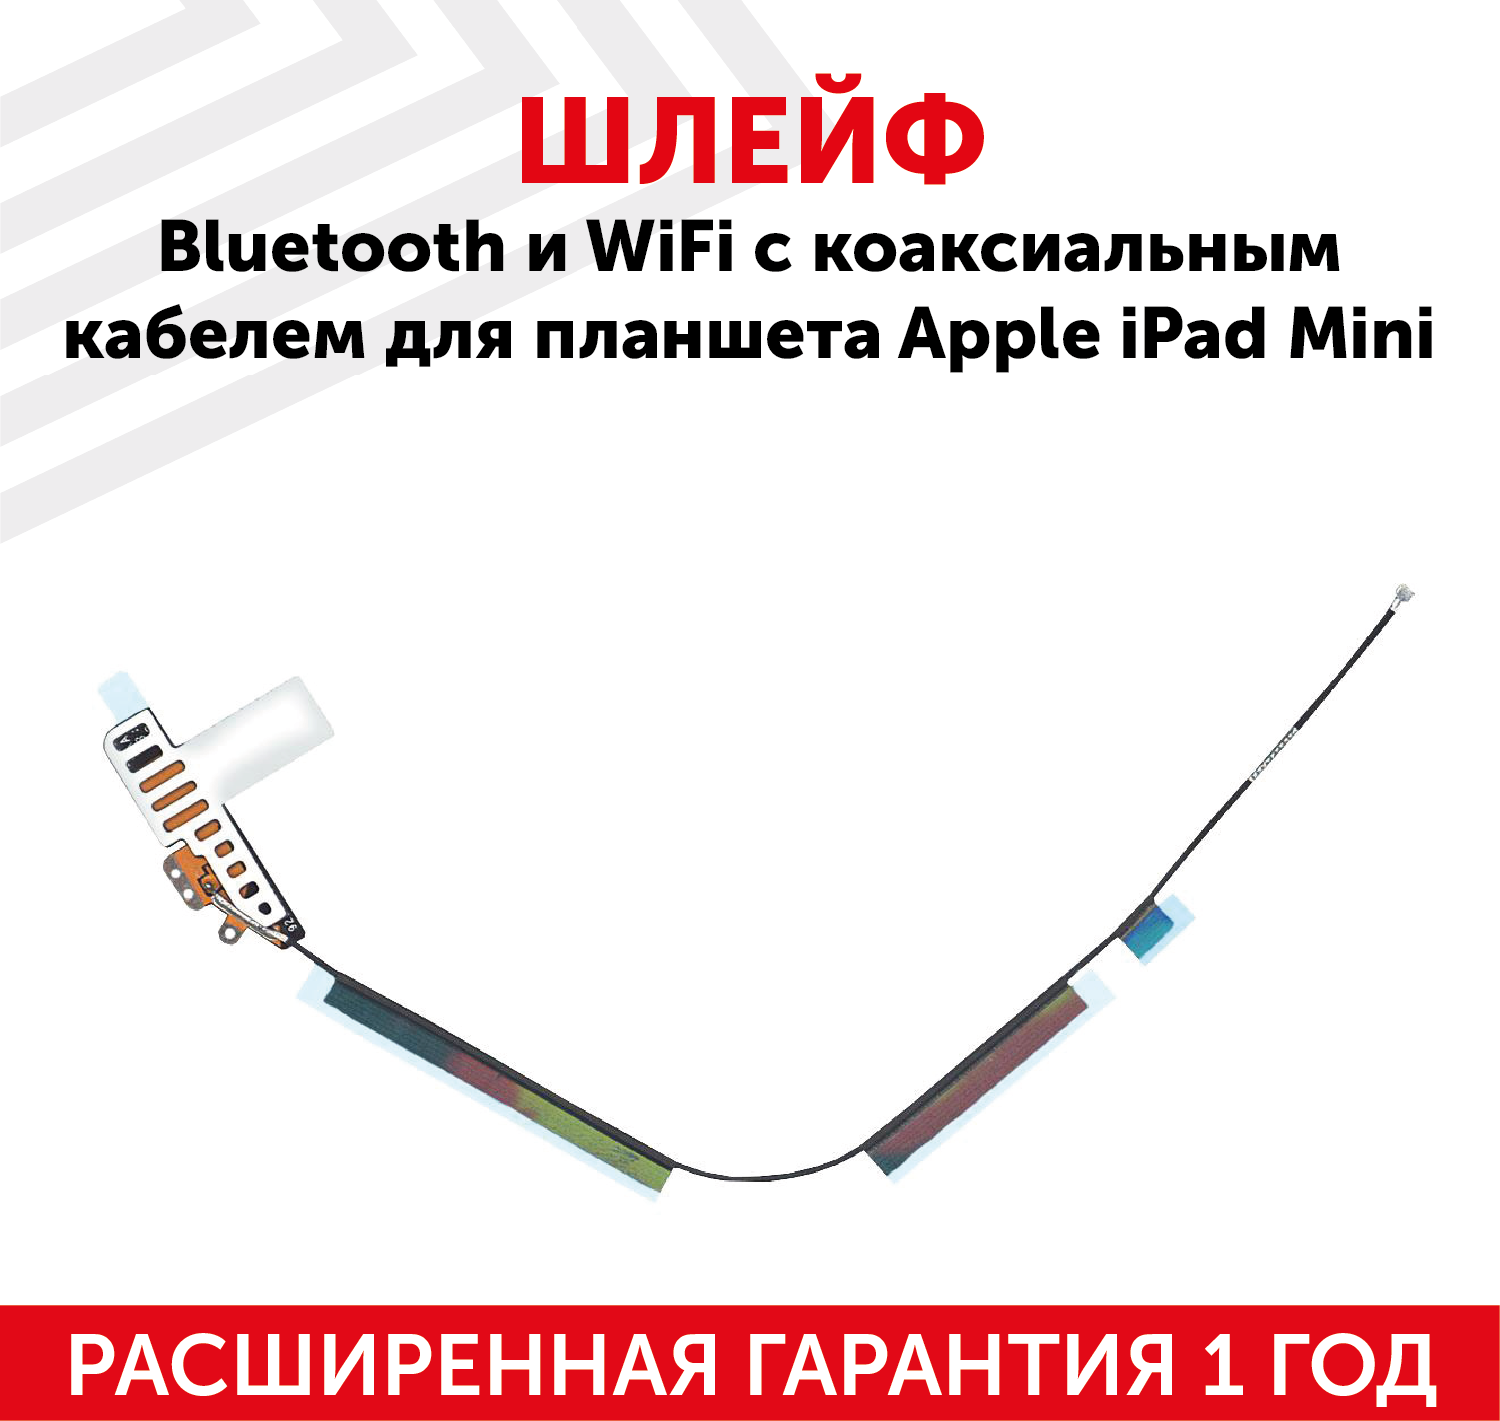 Шлейф Bluetooth и Wi-Fi c коаксиальным кабелем для планшета Apple iPad Mini